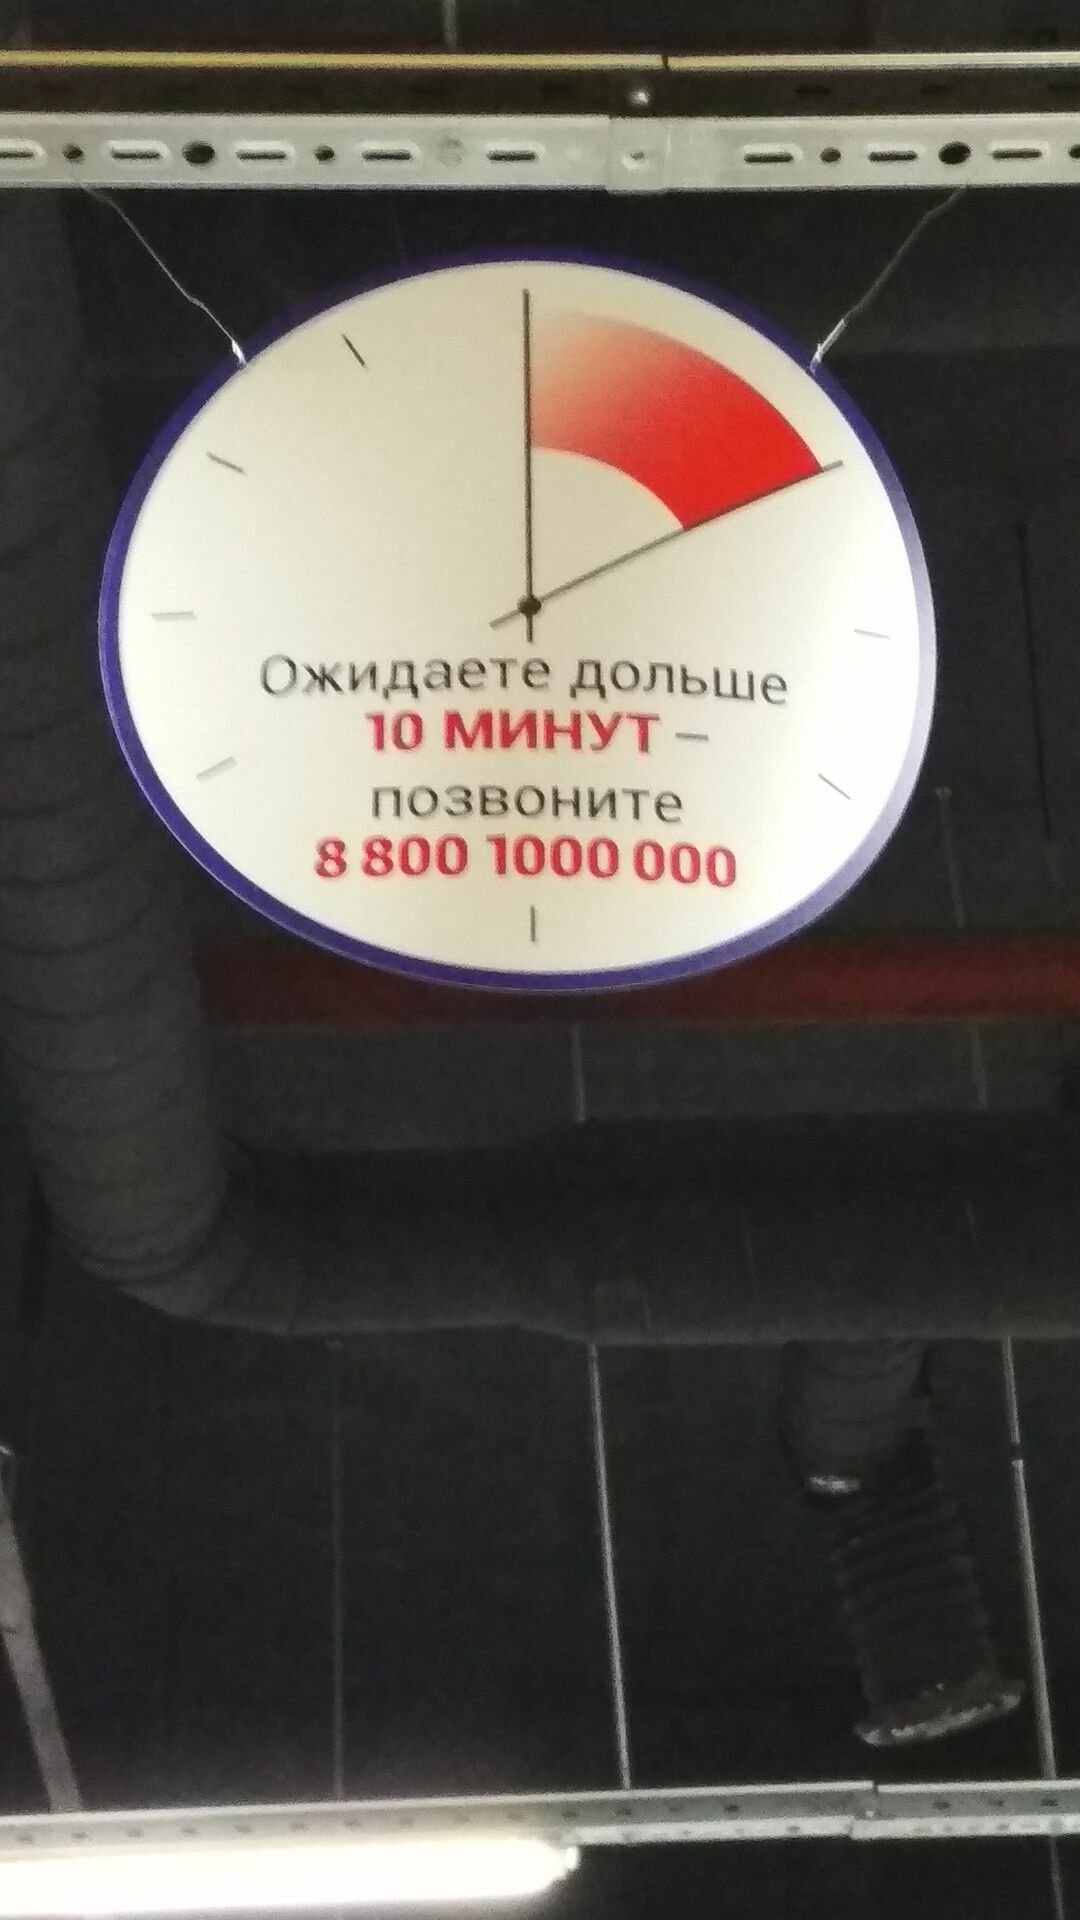 Почта России, видимо зная об очередях, предлагает еще один "шаг вперед" - звонить и жаловаться